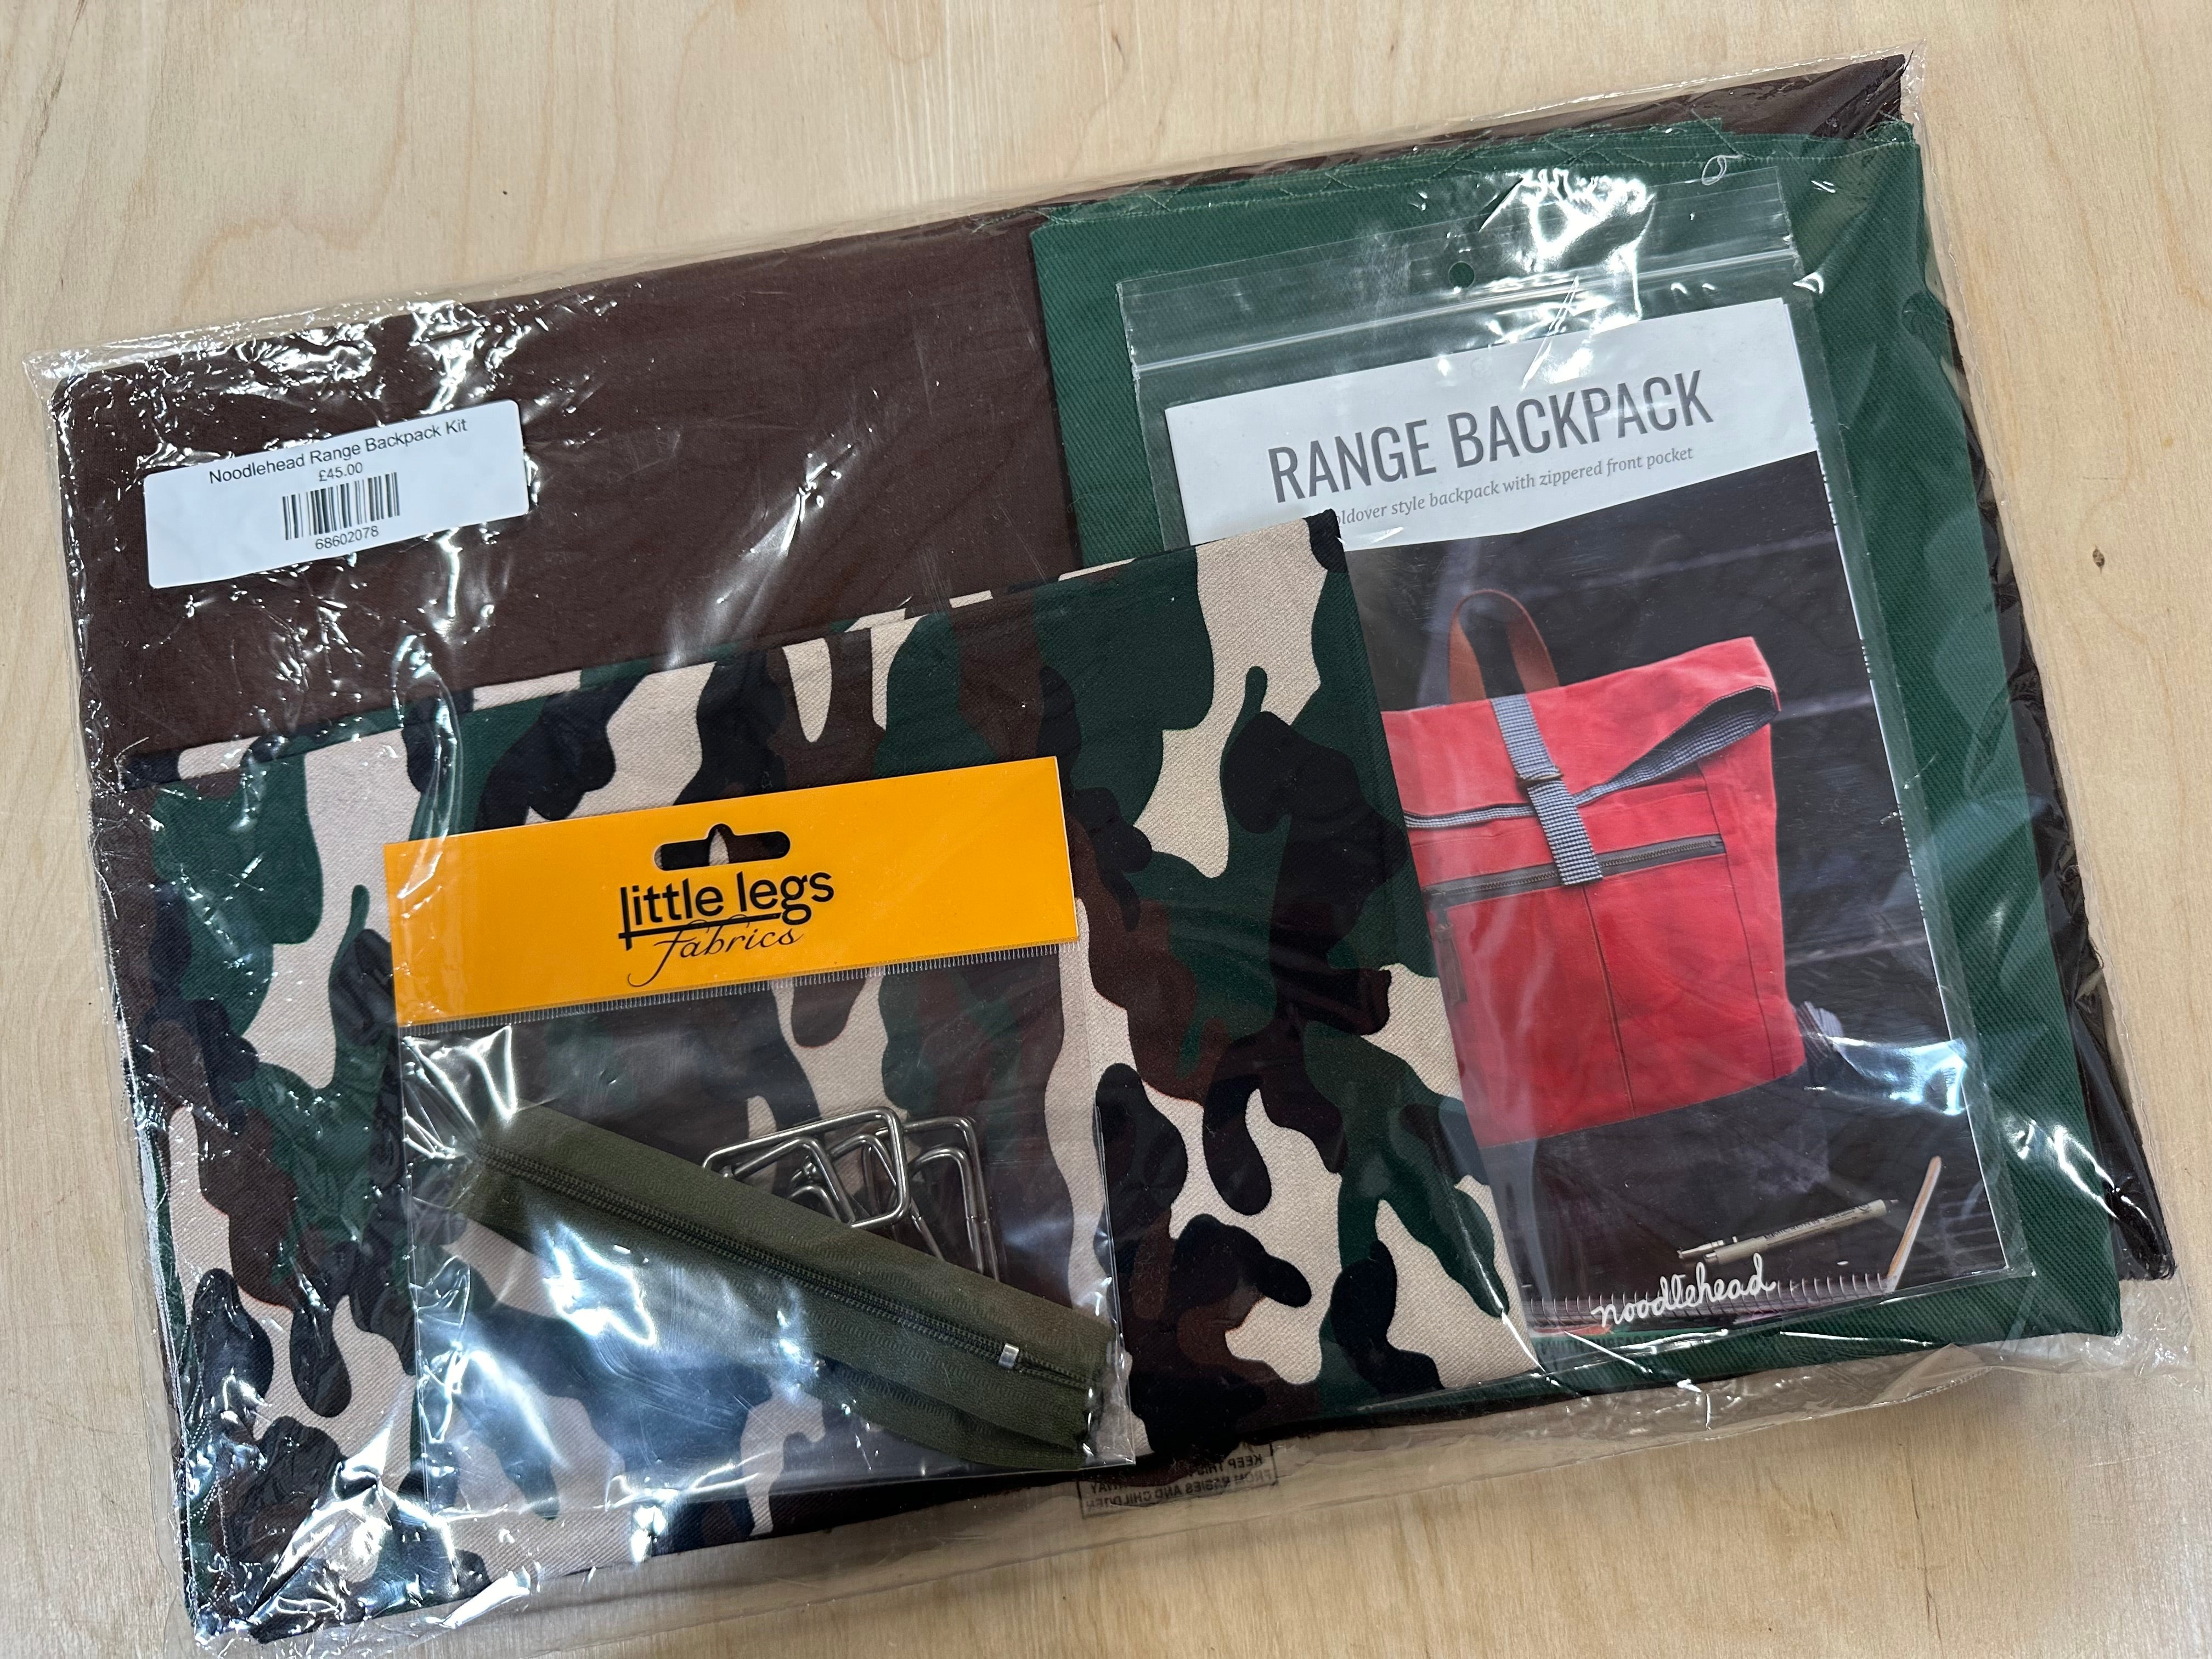 Noodlehead Range Backpack Kit - Camo Fabric